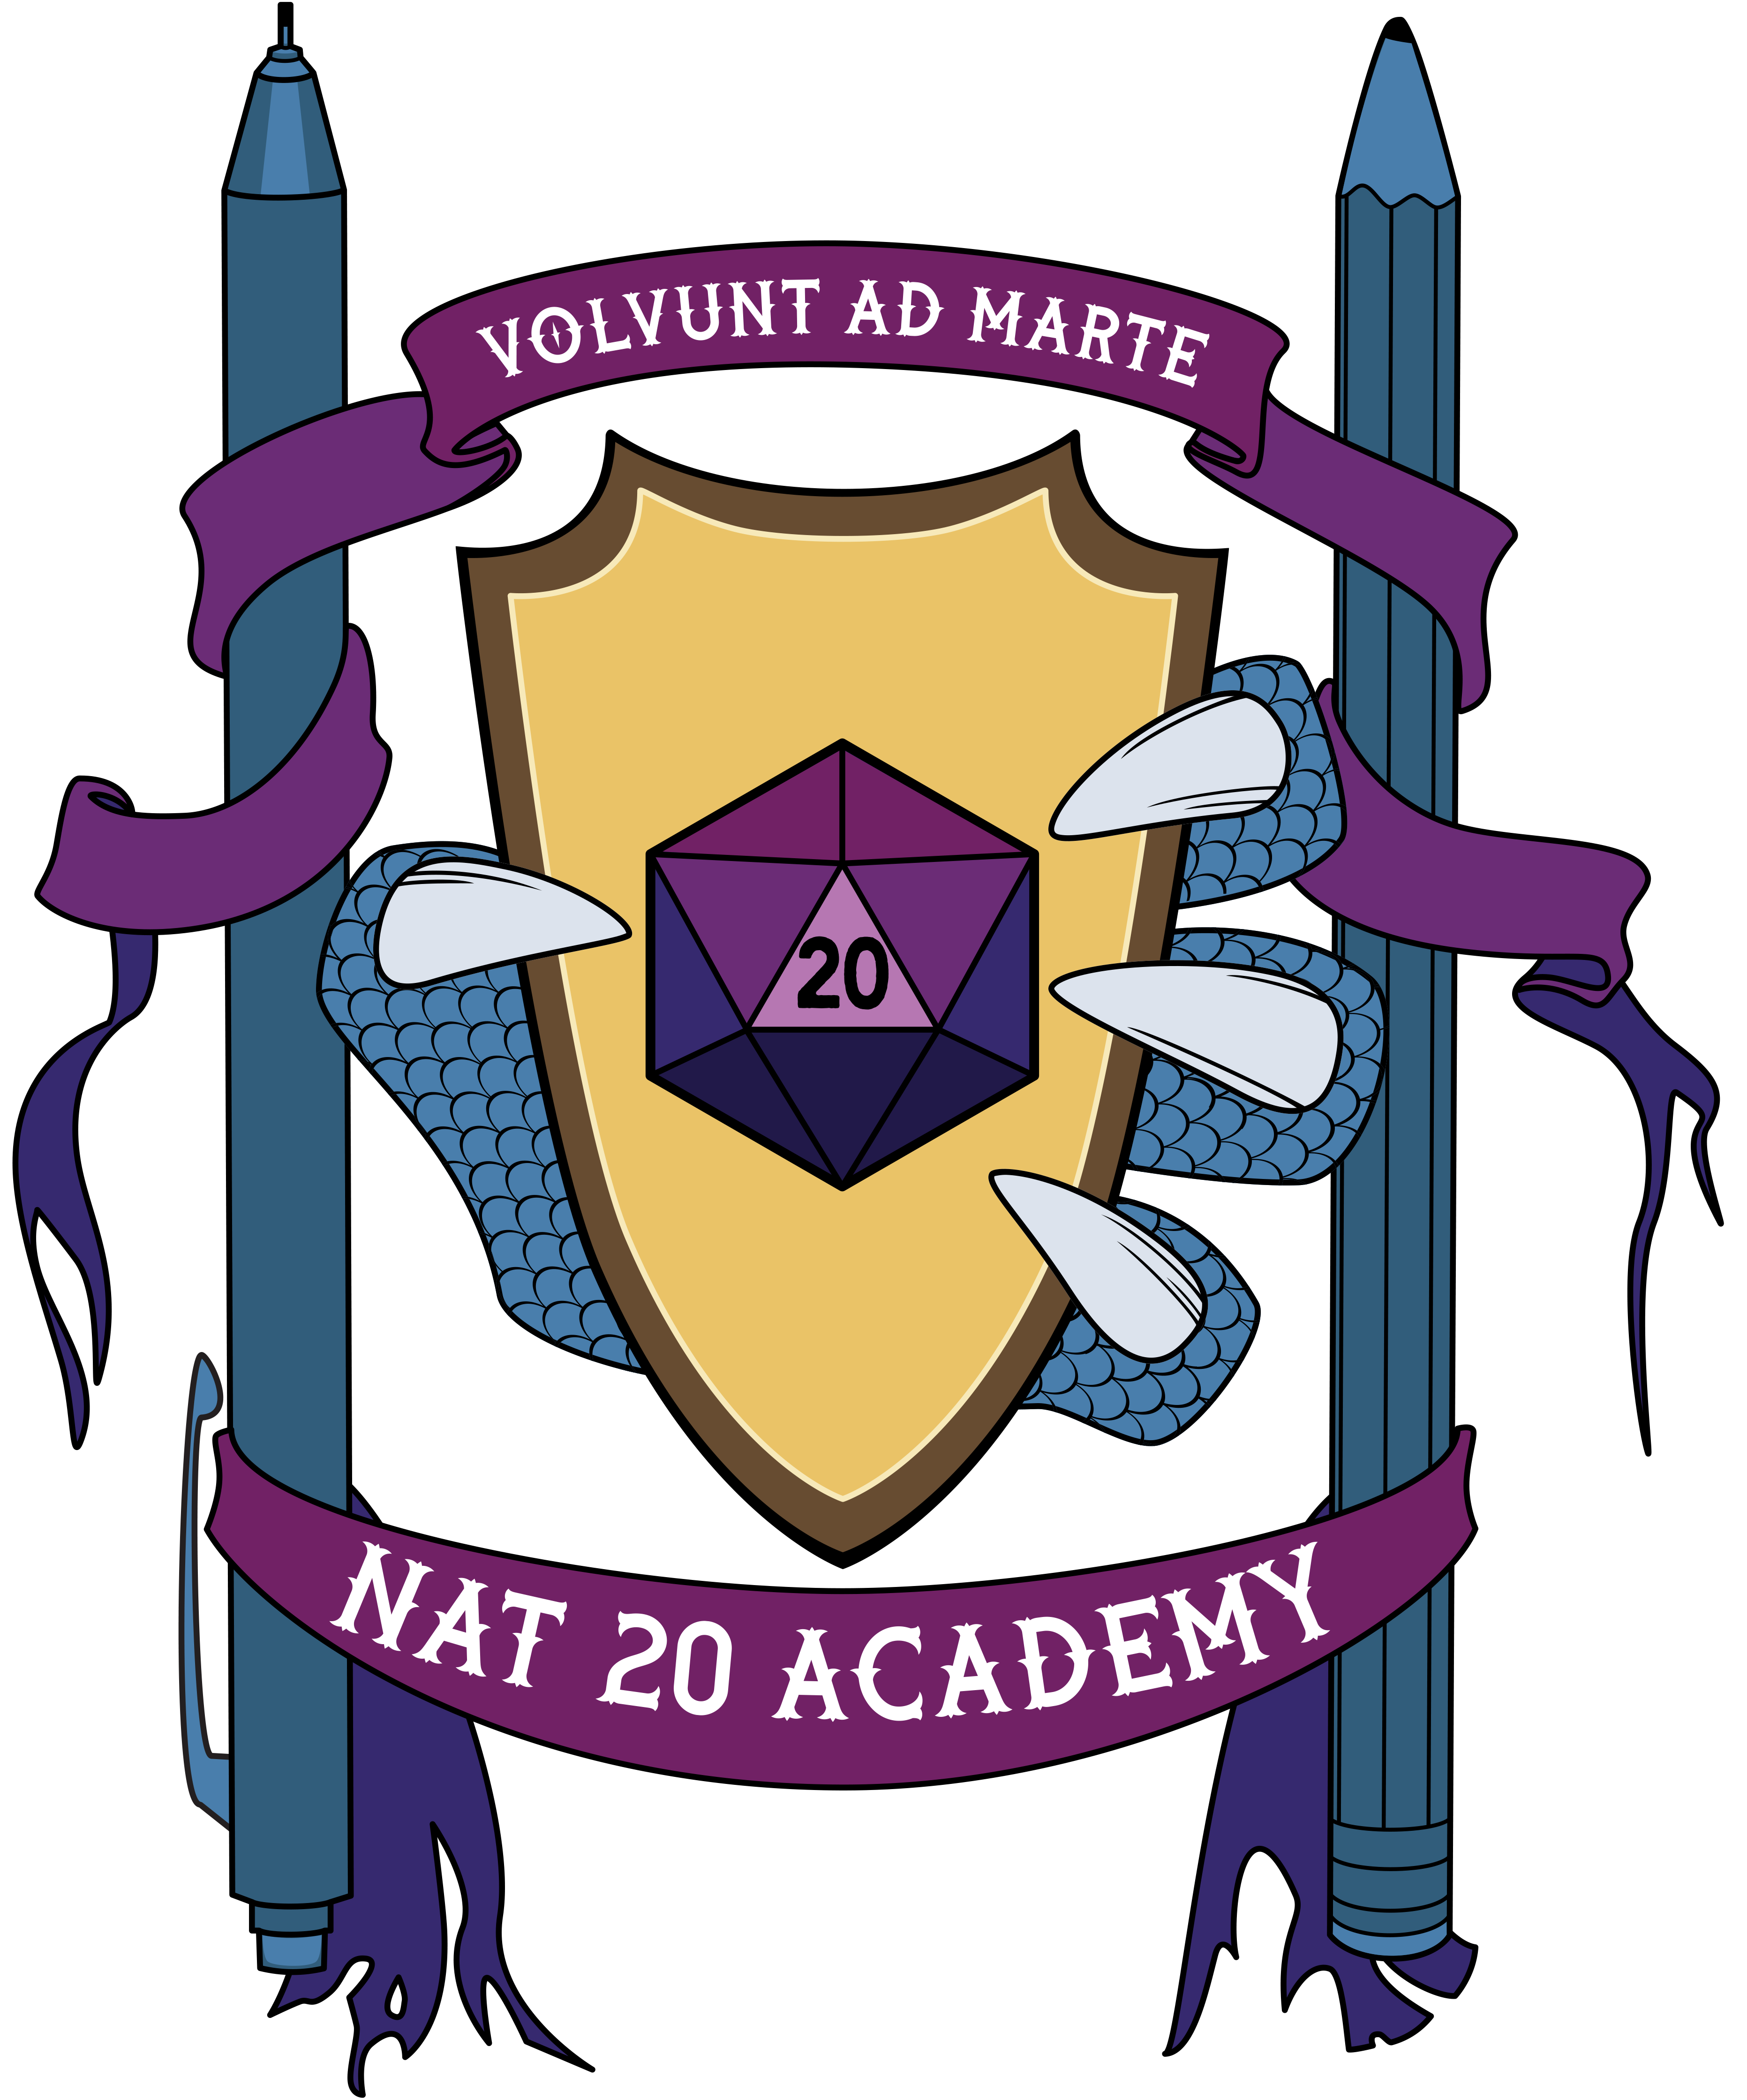 nat 20 academy logo